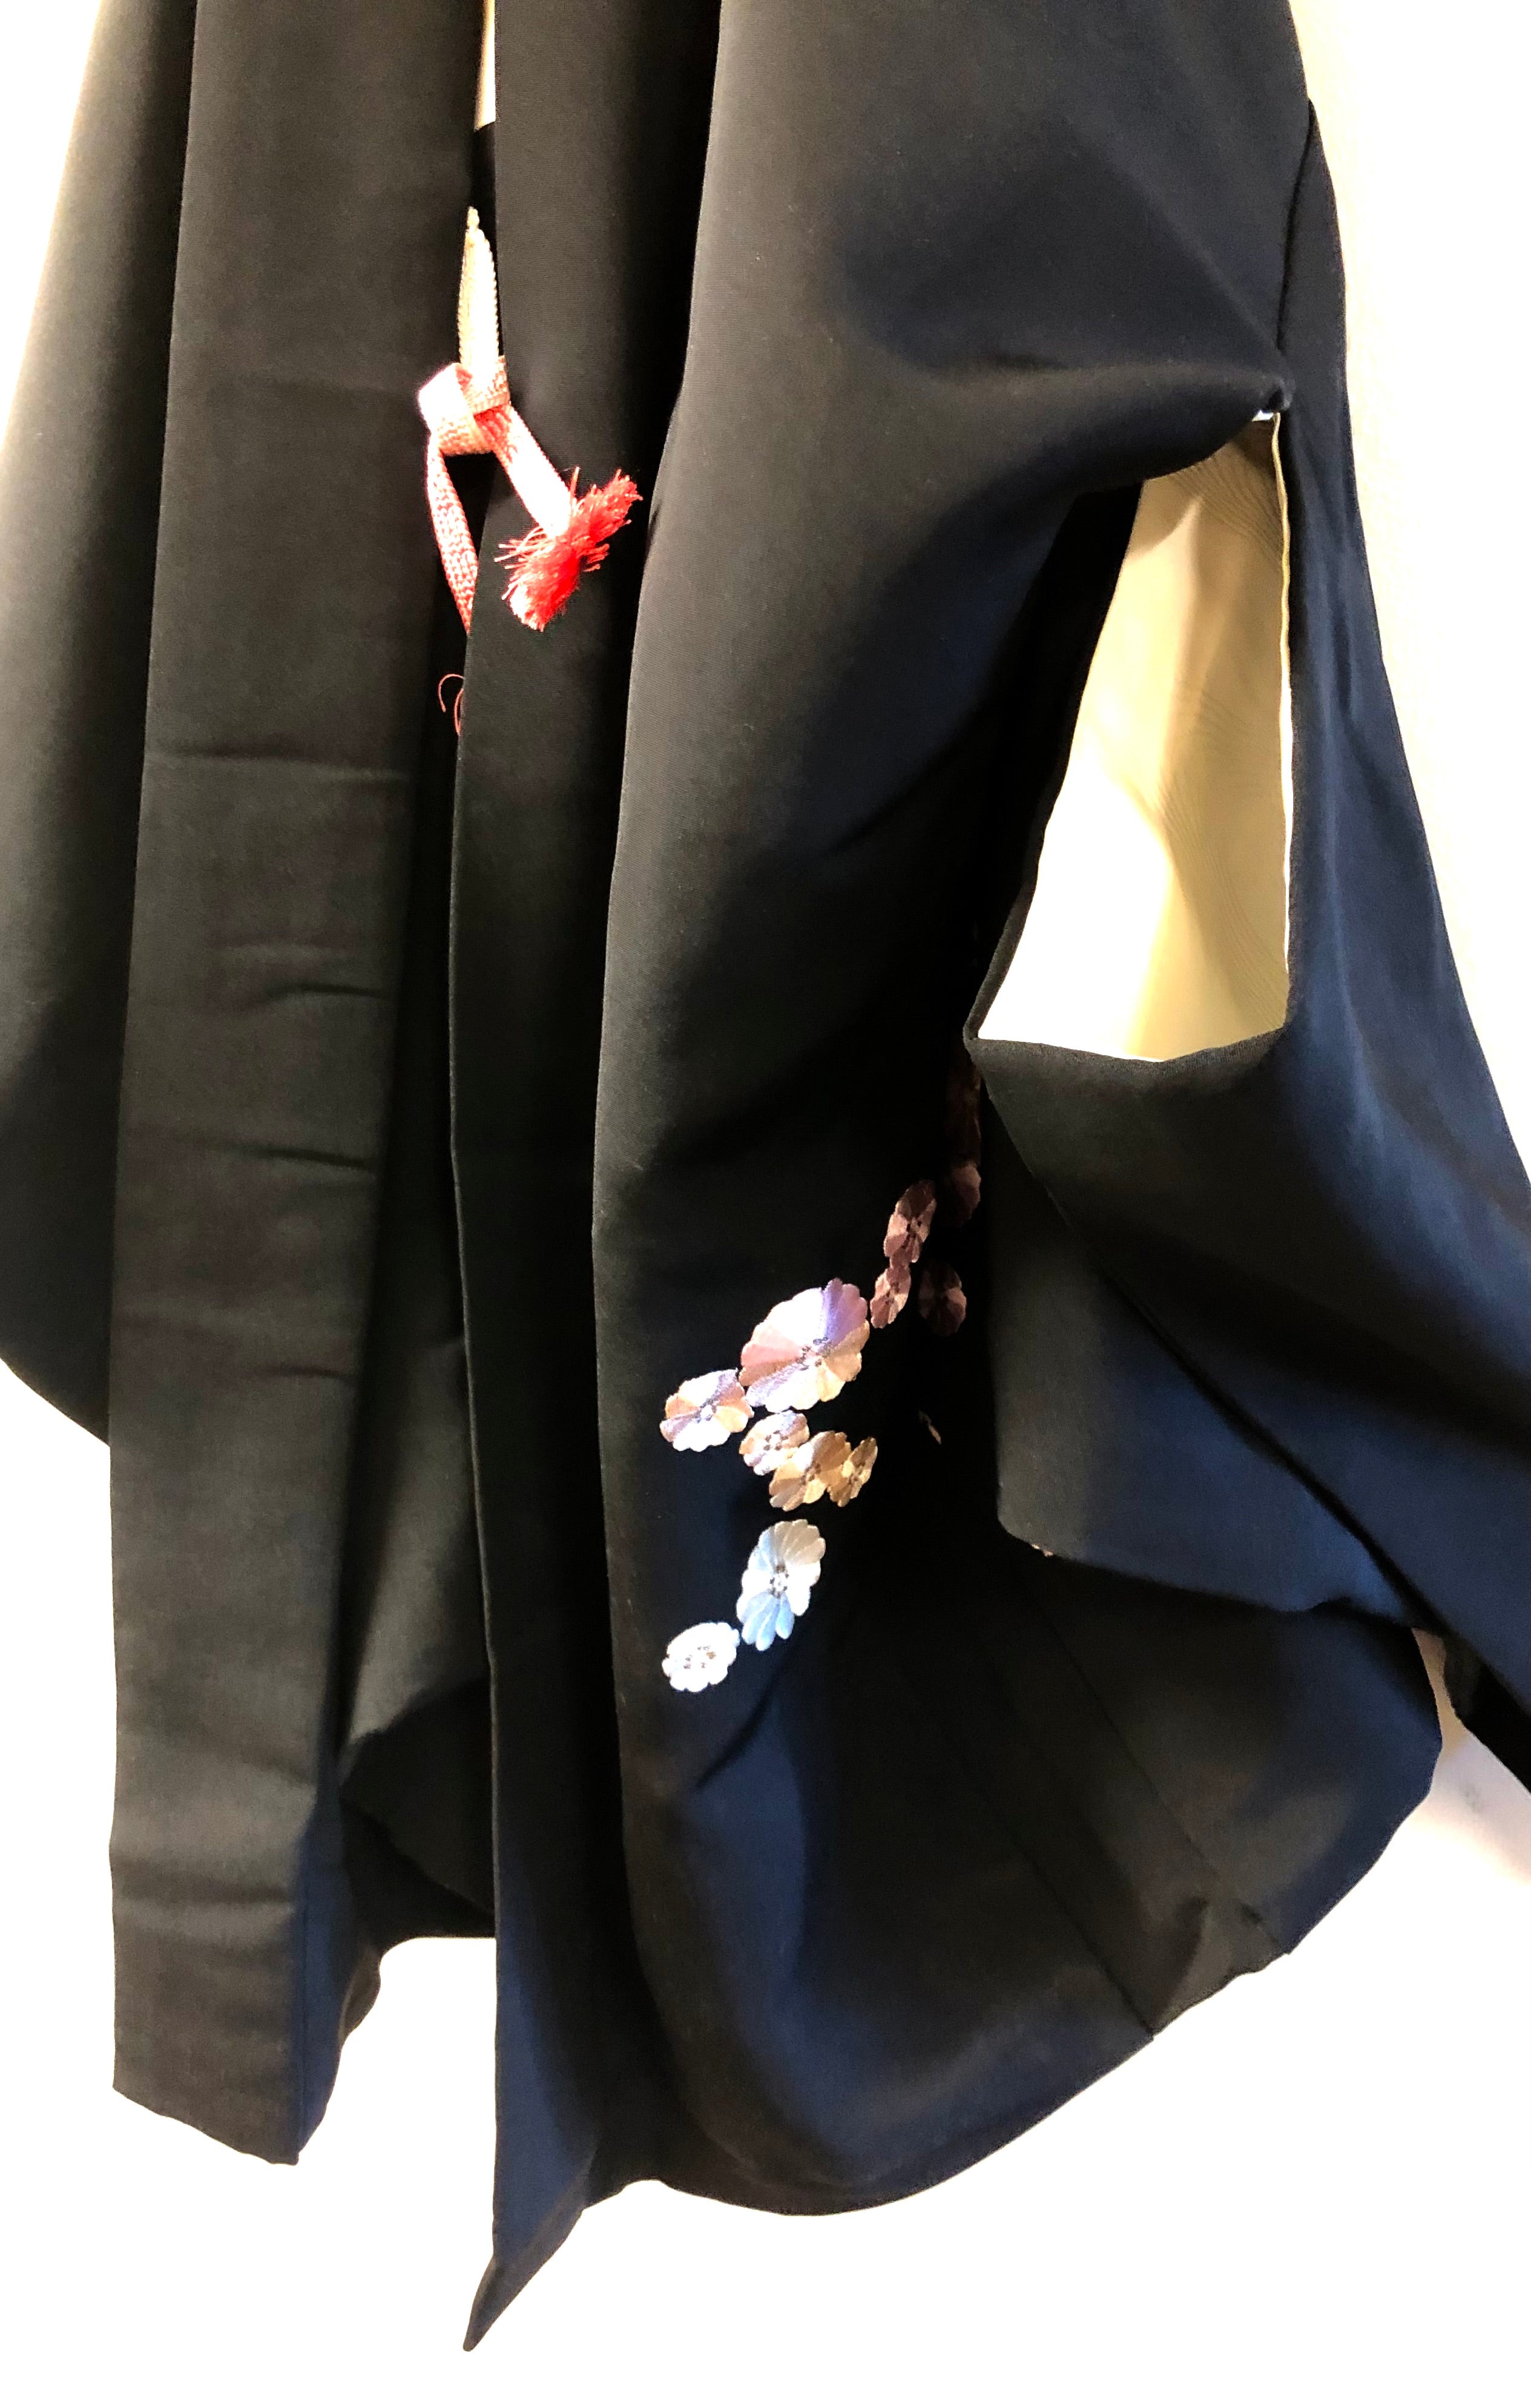 Khaki Traditional Japanese Style Women's Kimono Jacket Haori